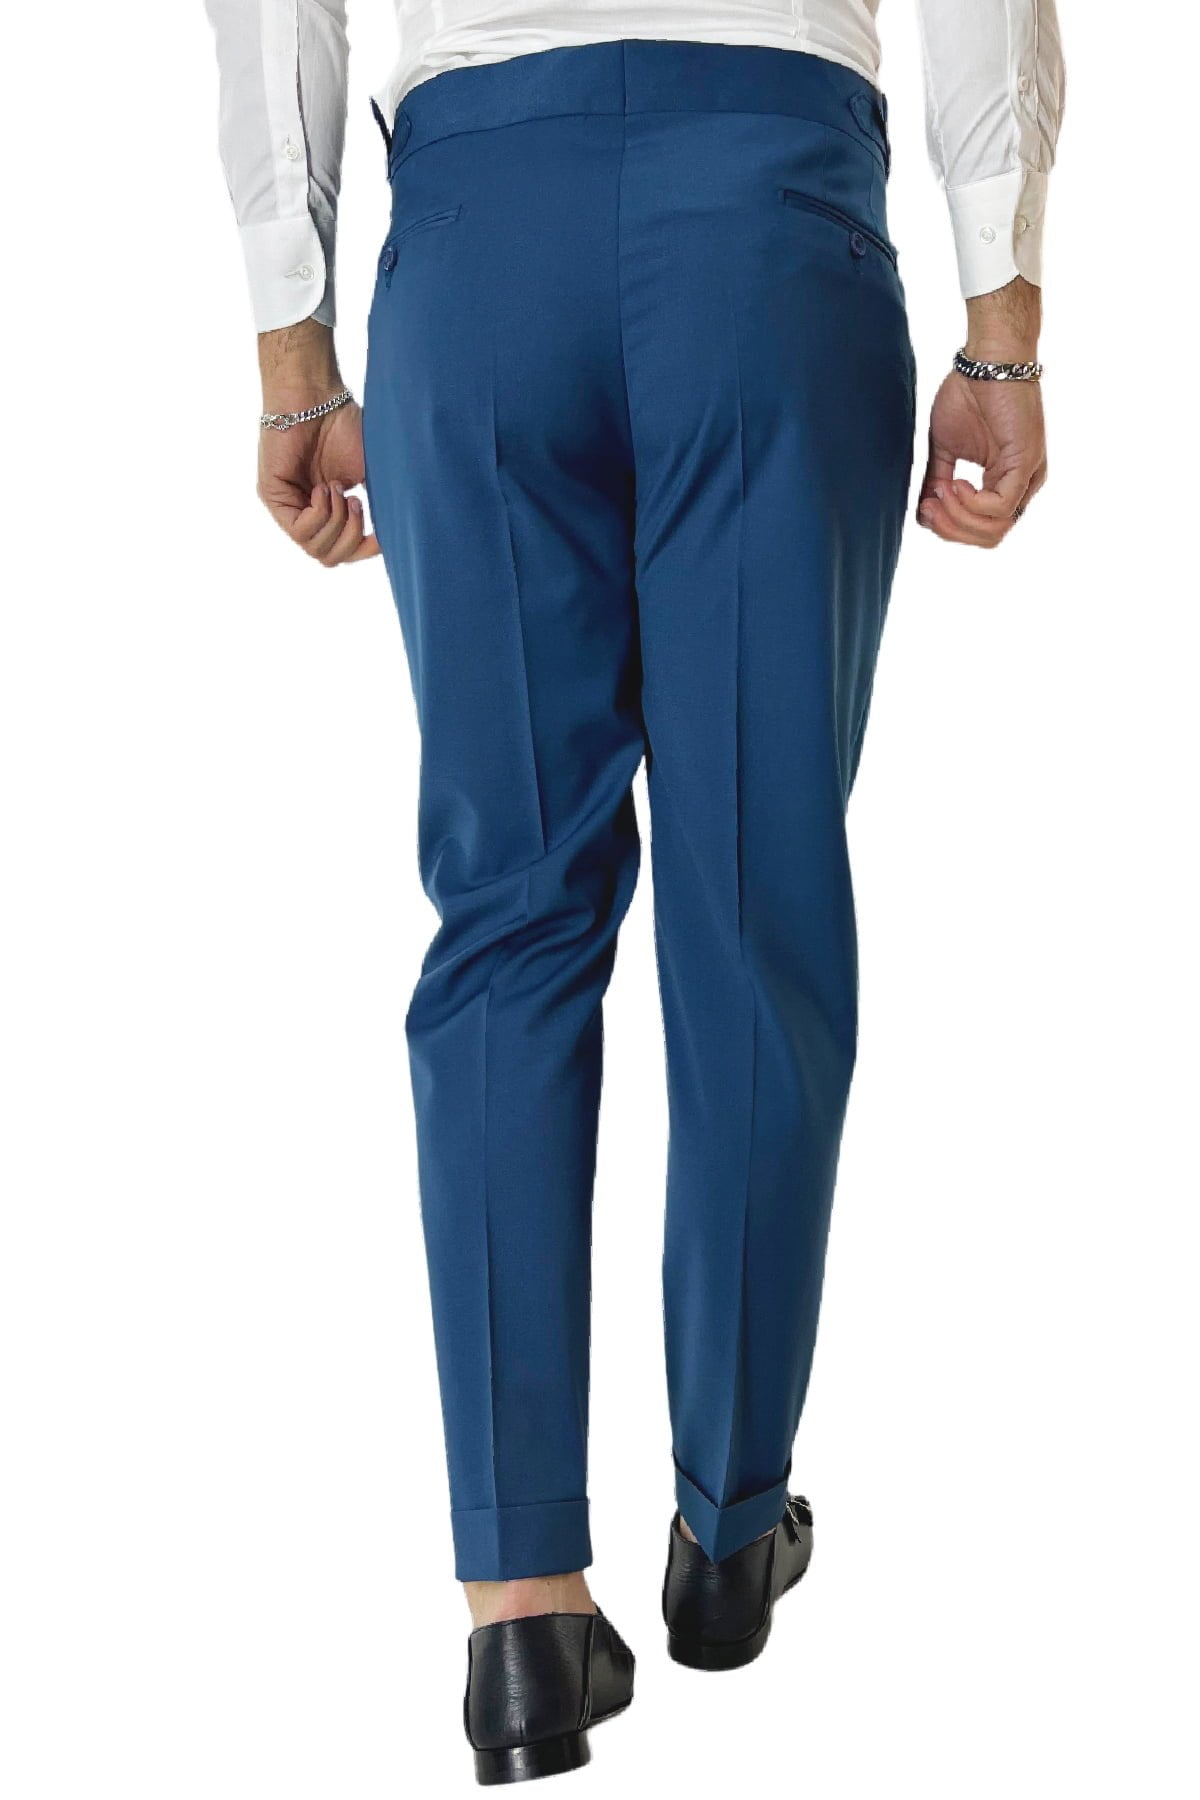 Pantalone uomo royal blu in fresco lana tinta unita vita alta con pinces fibbie laterali e risvolto 4cm